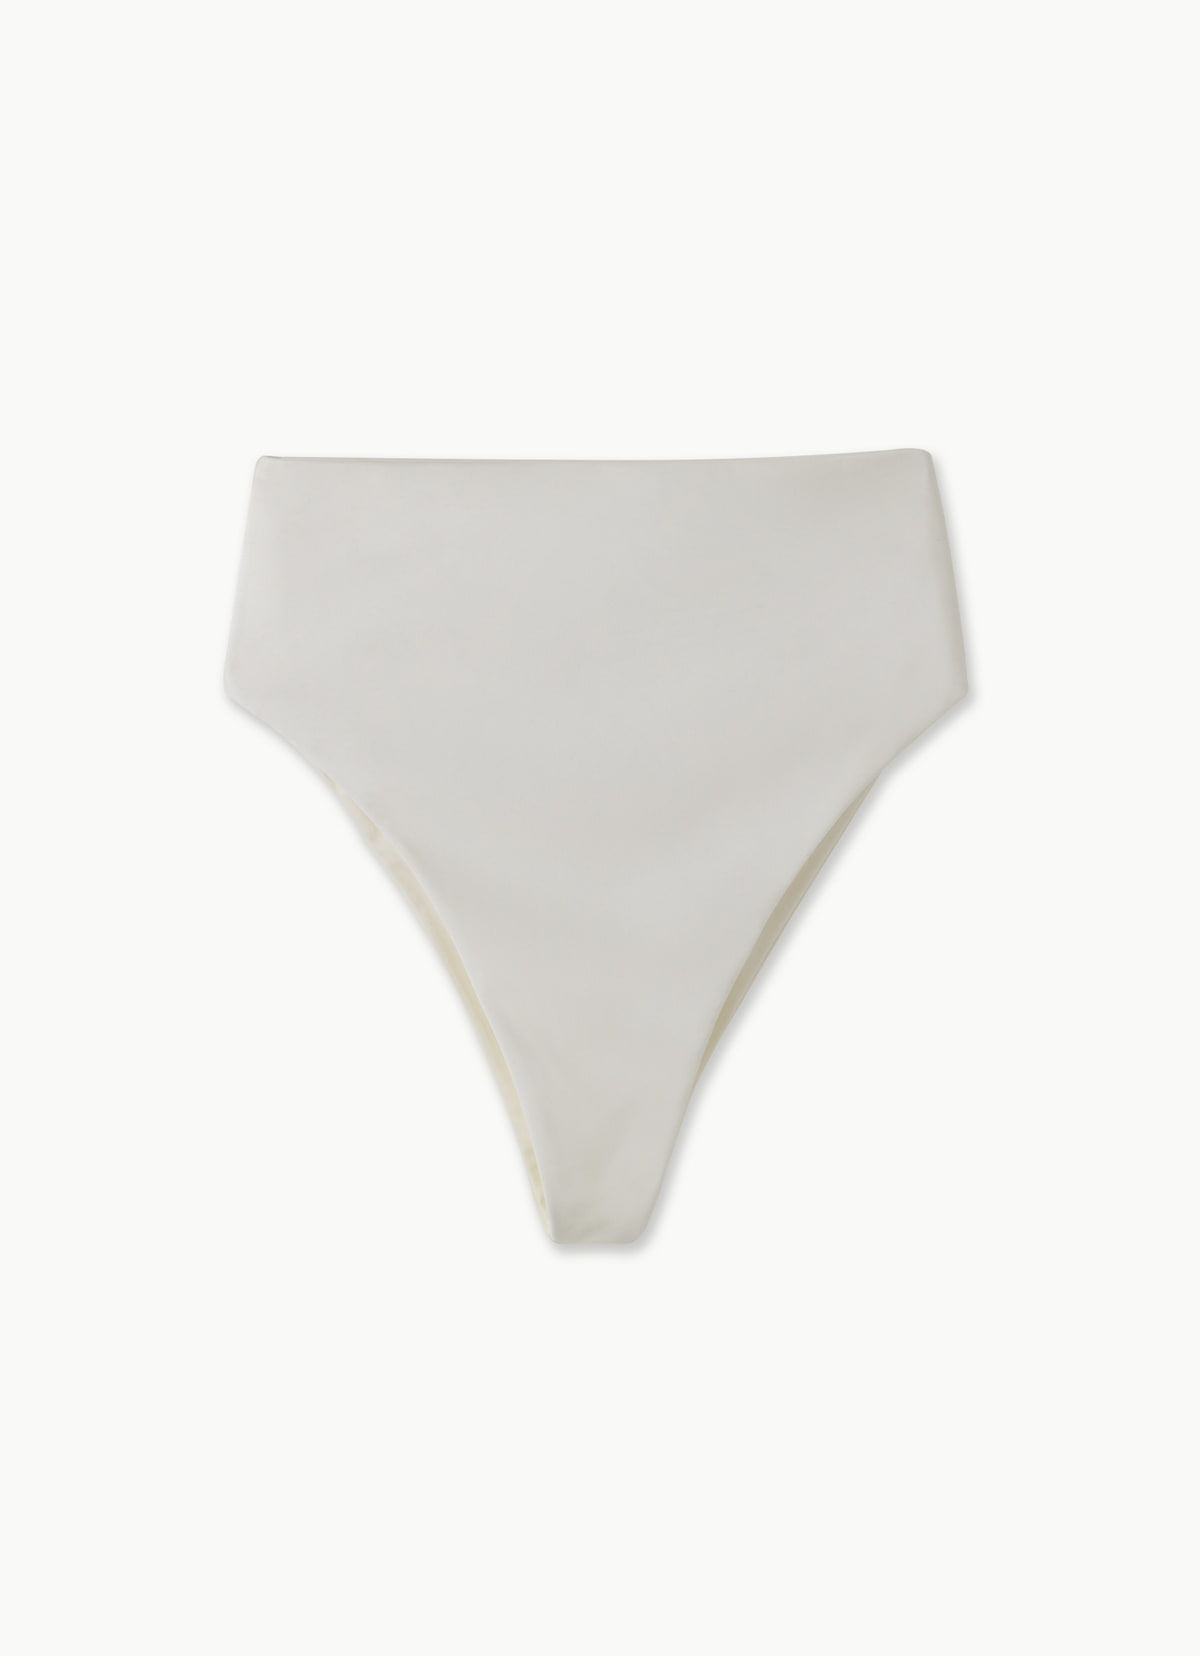 Verano bikini bottom_Off White